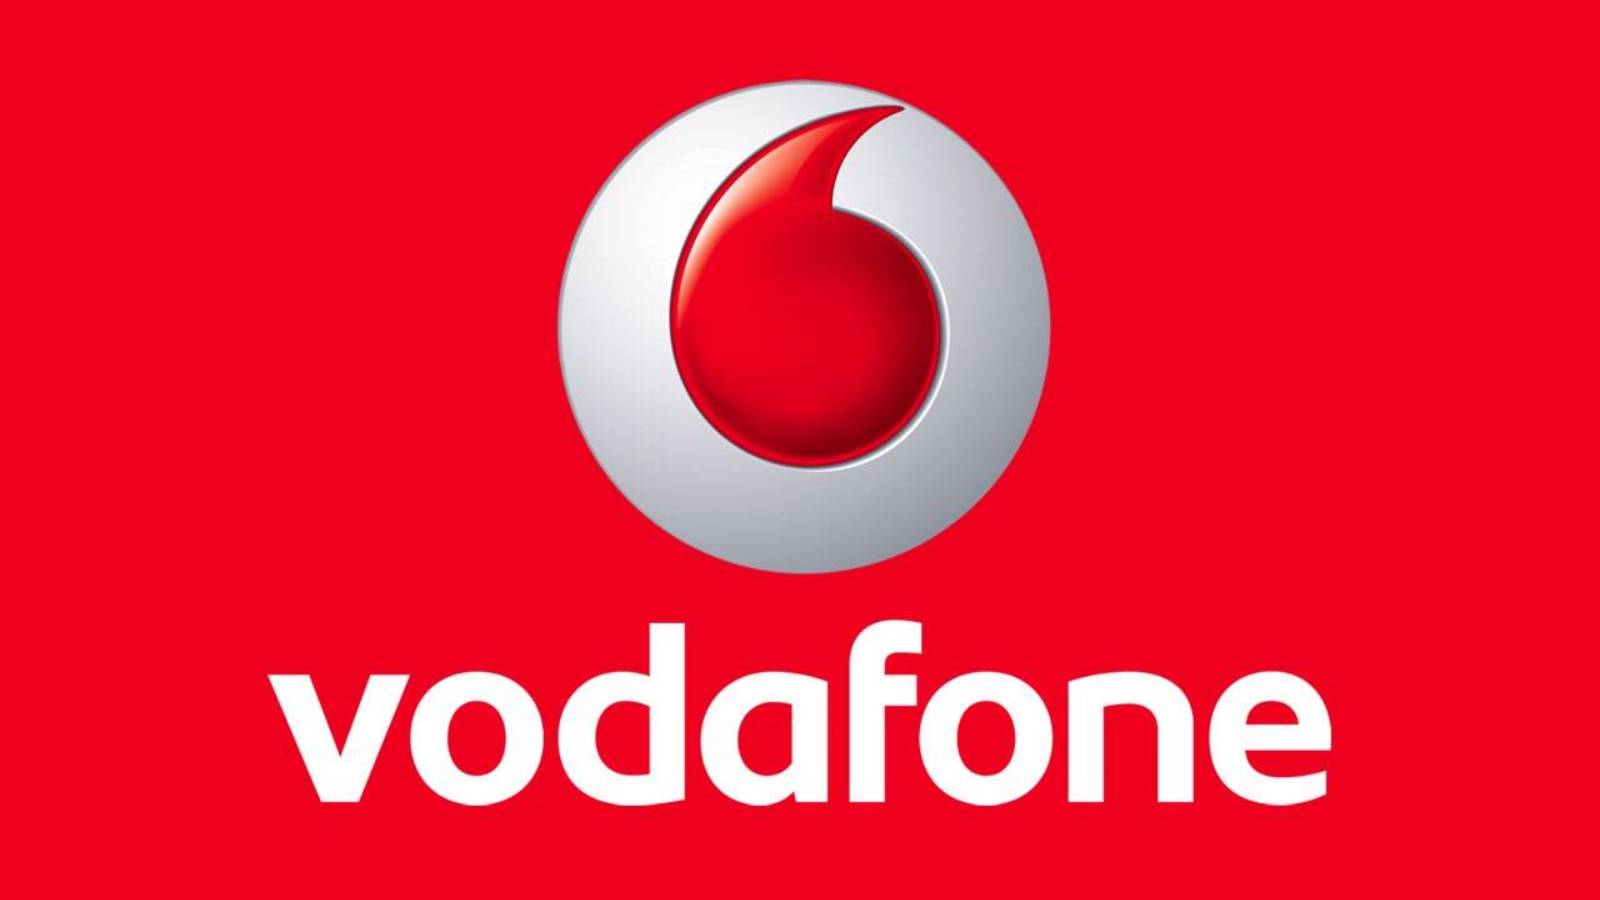 Vodafone gratis jul